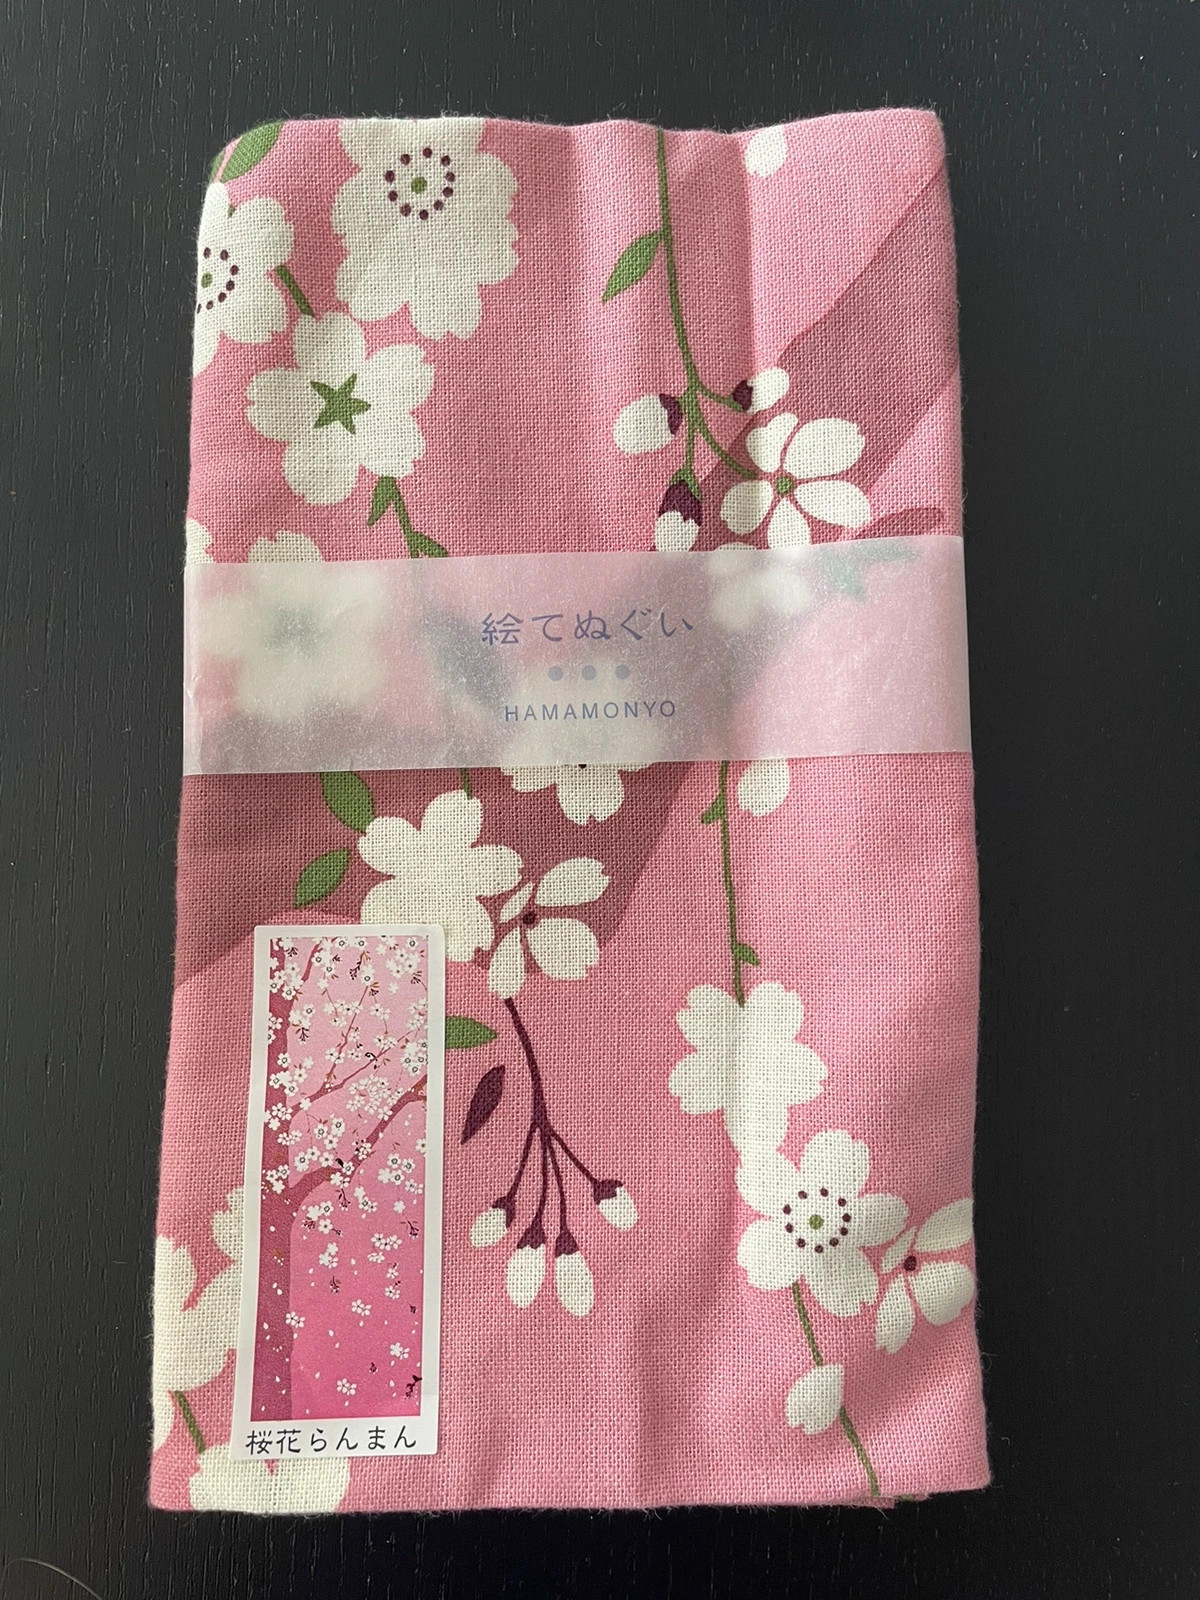 Oryginalny japoński ręcznik do rąk Hamamonyo tenugui